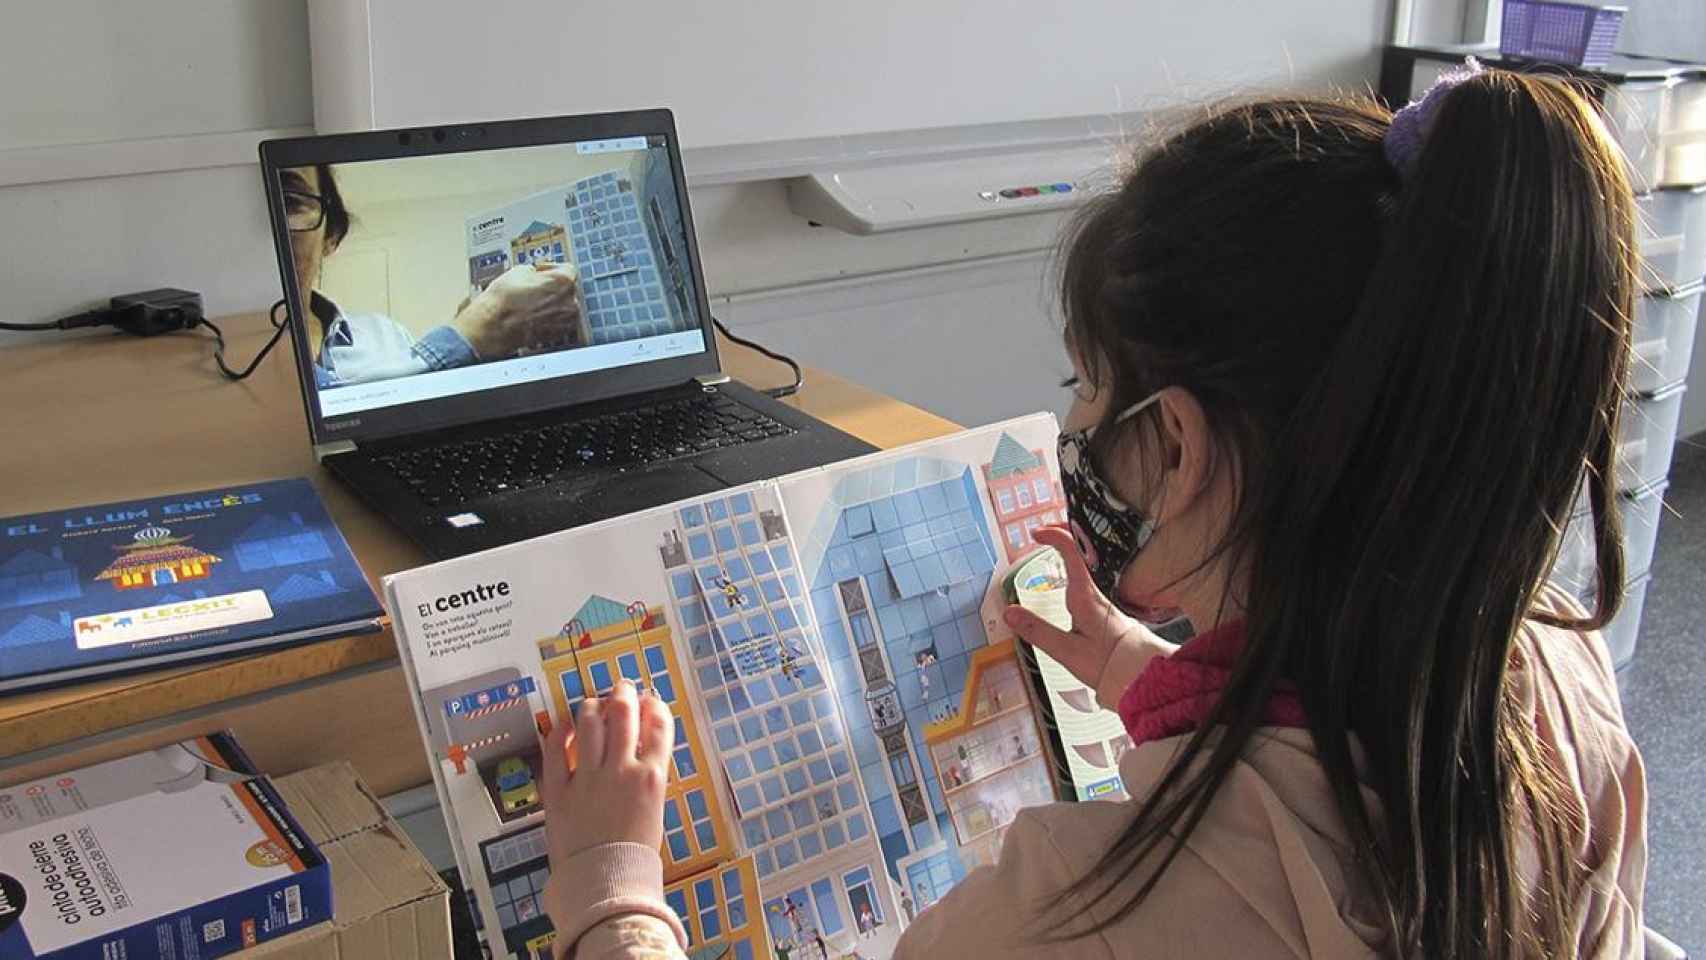 Una niña y un voluntario comparten lectura en el marco del programa de CaixaBank / EP